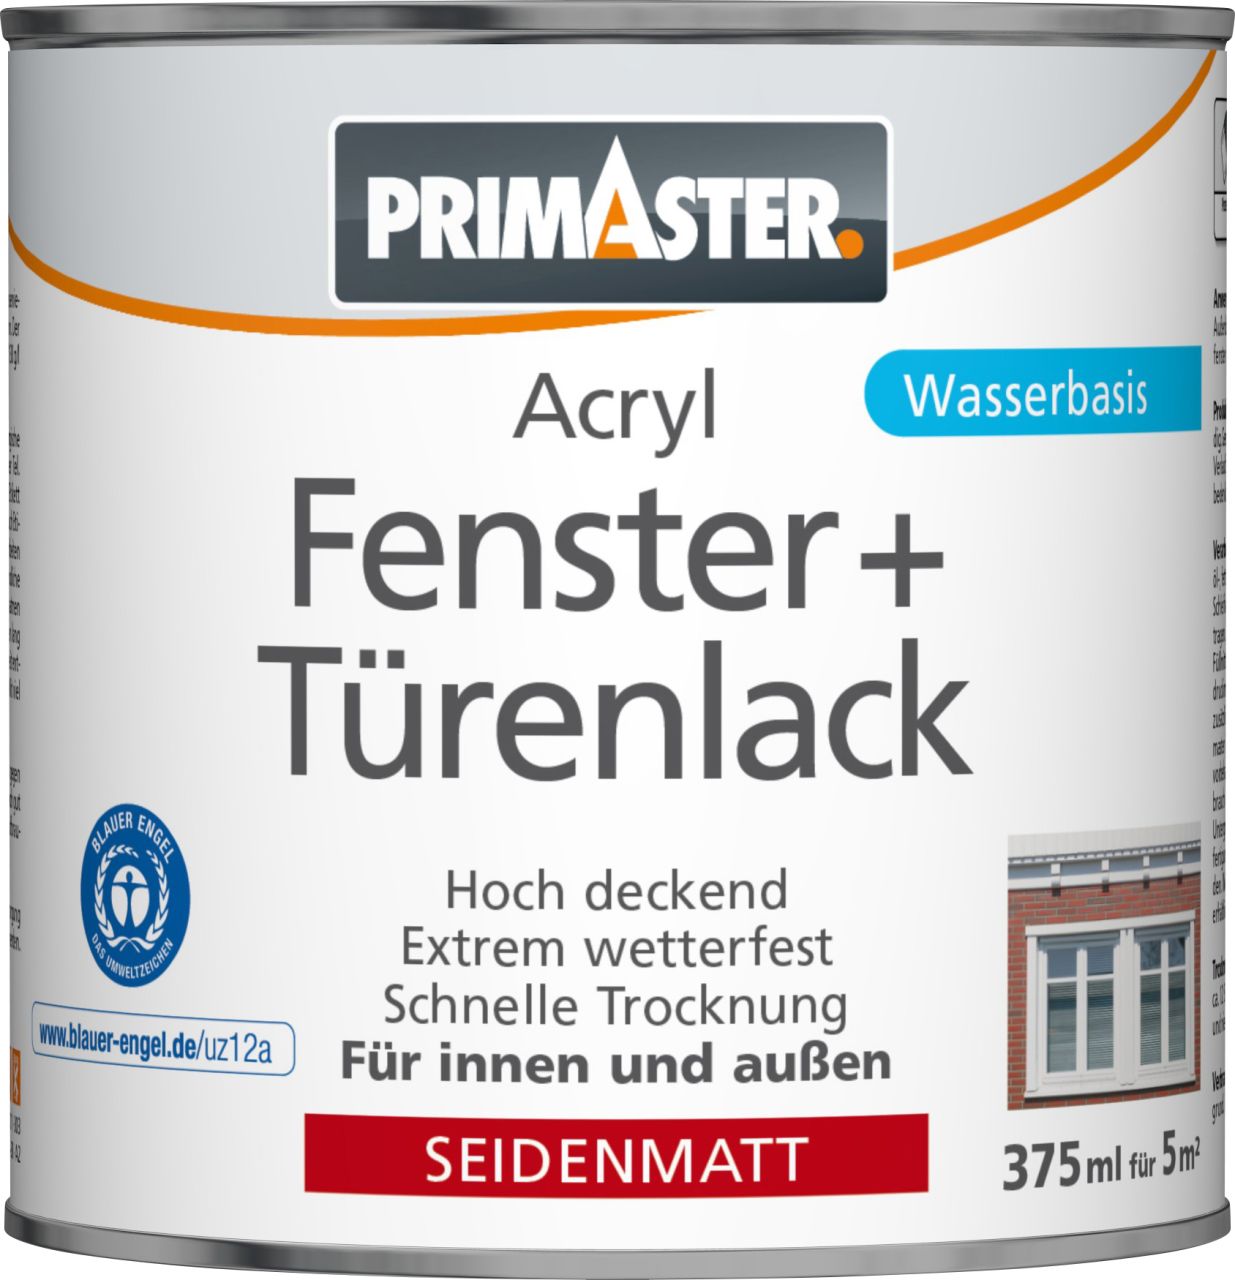 Primaster Acryl Fenster- und Türenlack 375 ml weiß seidenmatt von Primaster